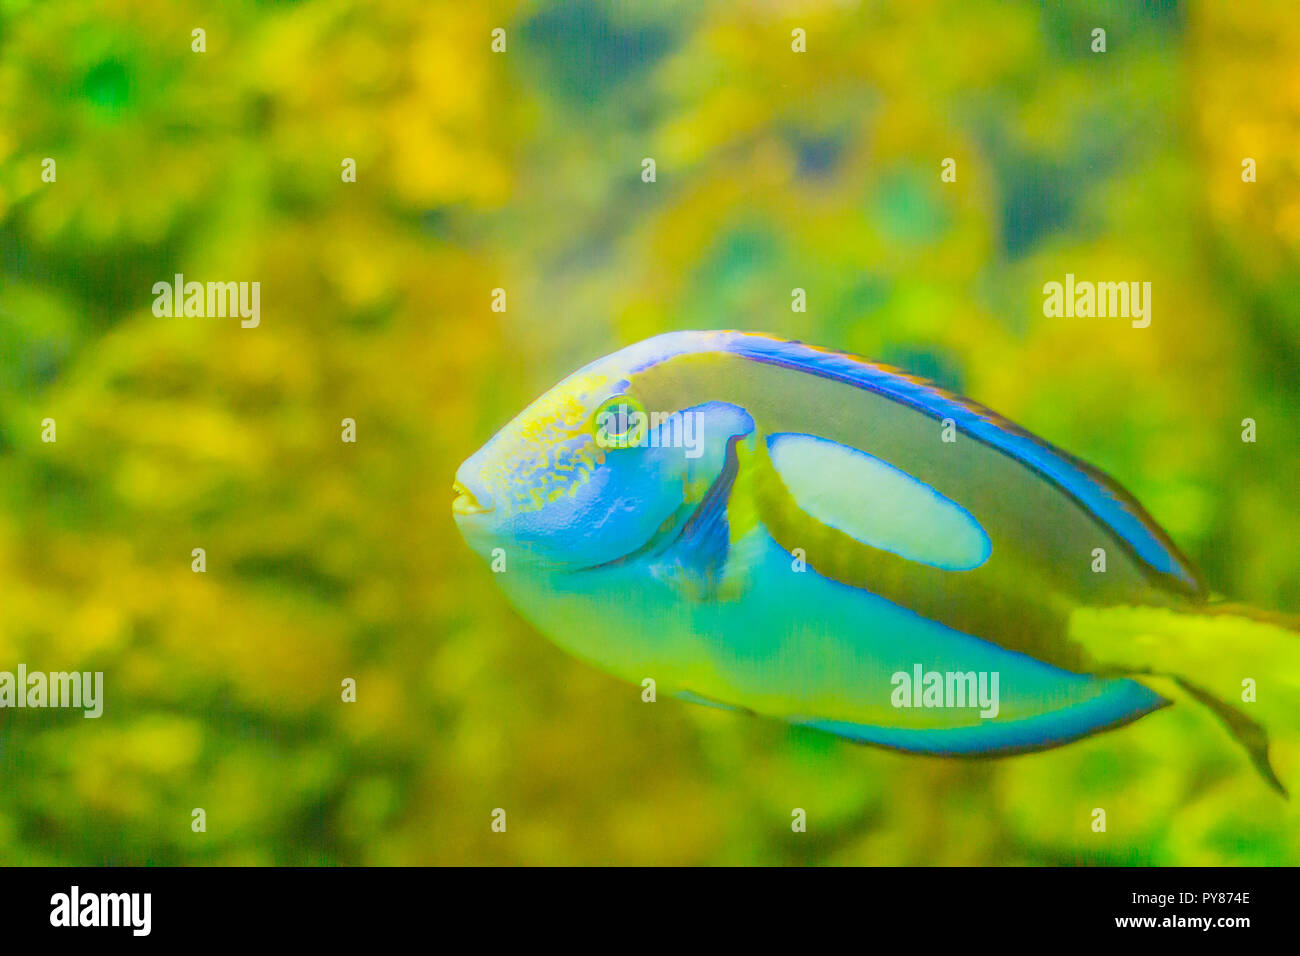 Lindo Regal Pacific Blue peces tang (Paracanthurus hepatus) es nadar en el acuario. Paracanthurus hepatus es una especie de pez cirujano del Indopacífico. Foto de stock